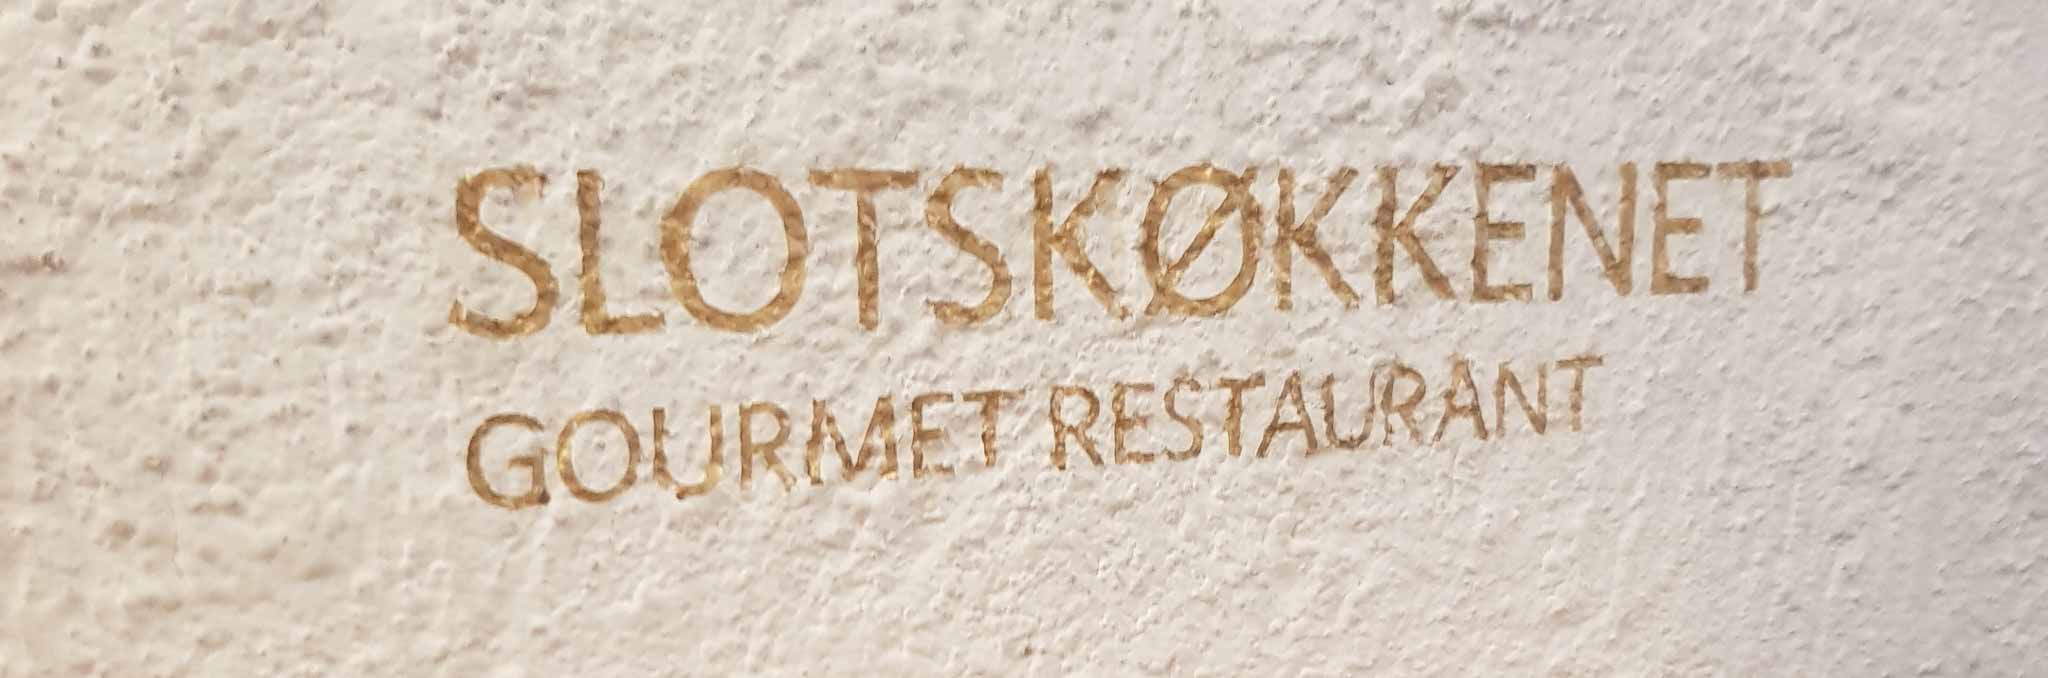 Skrift på væggen - "Slotskøkkenet - Gourmet Restaurant"